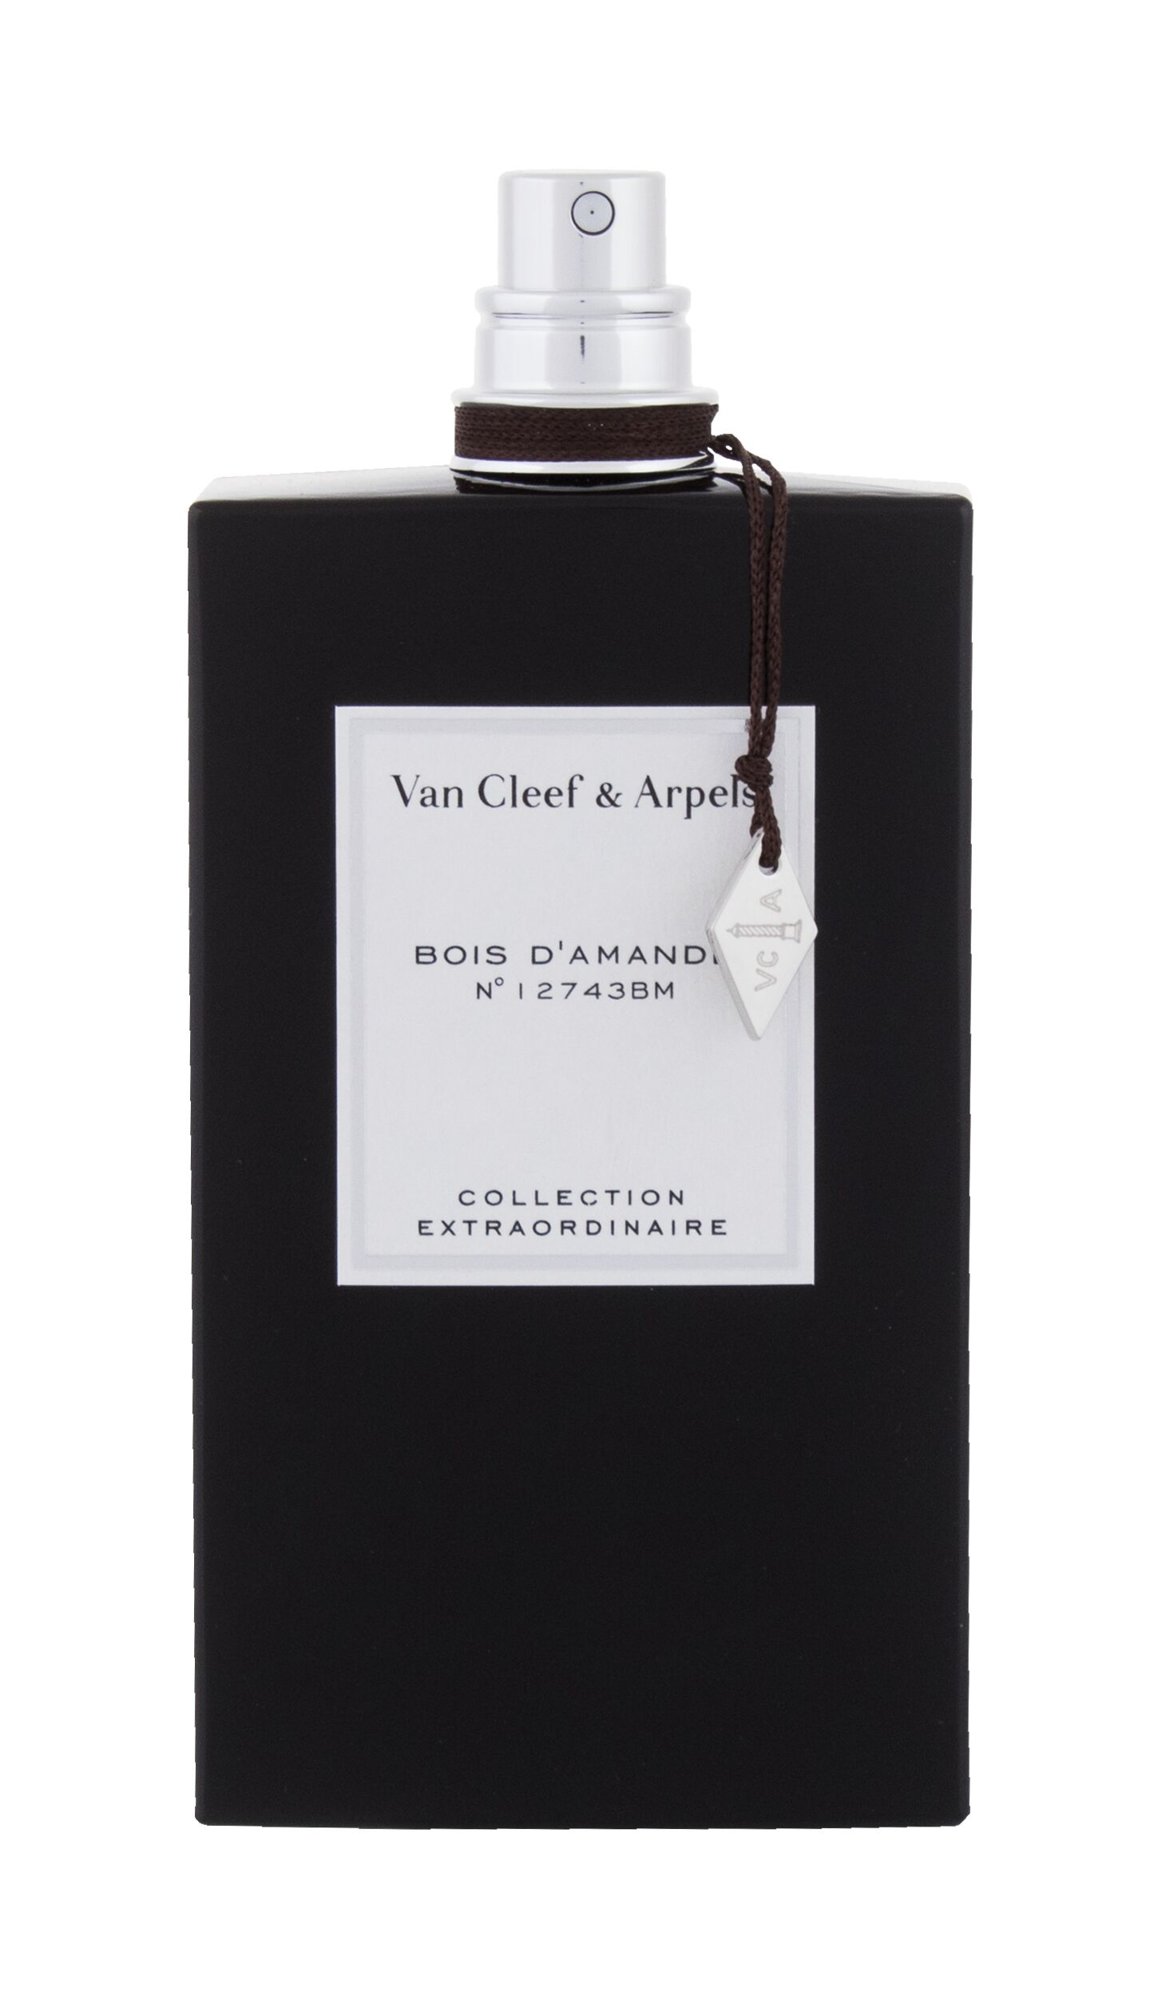 Van Cleef & Arpels Collection Extraordinaire Bois d´Amande 10 ml NIŠINIAI kvepalų mėginukas (atomaizeris) Unisex EDP